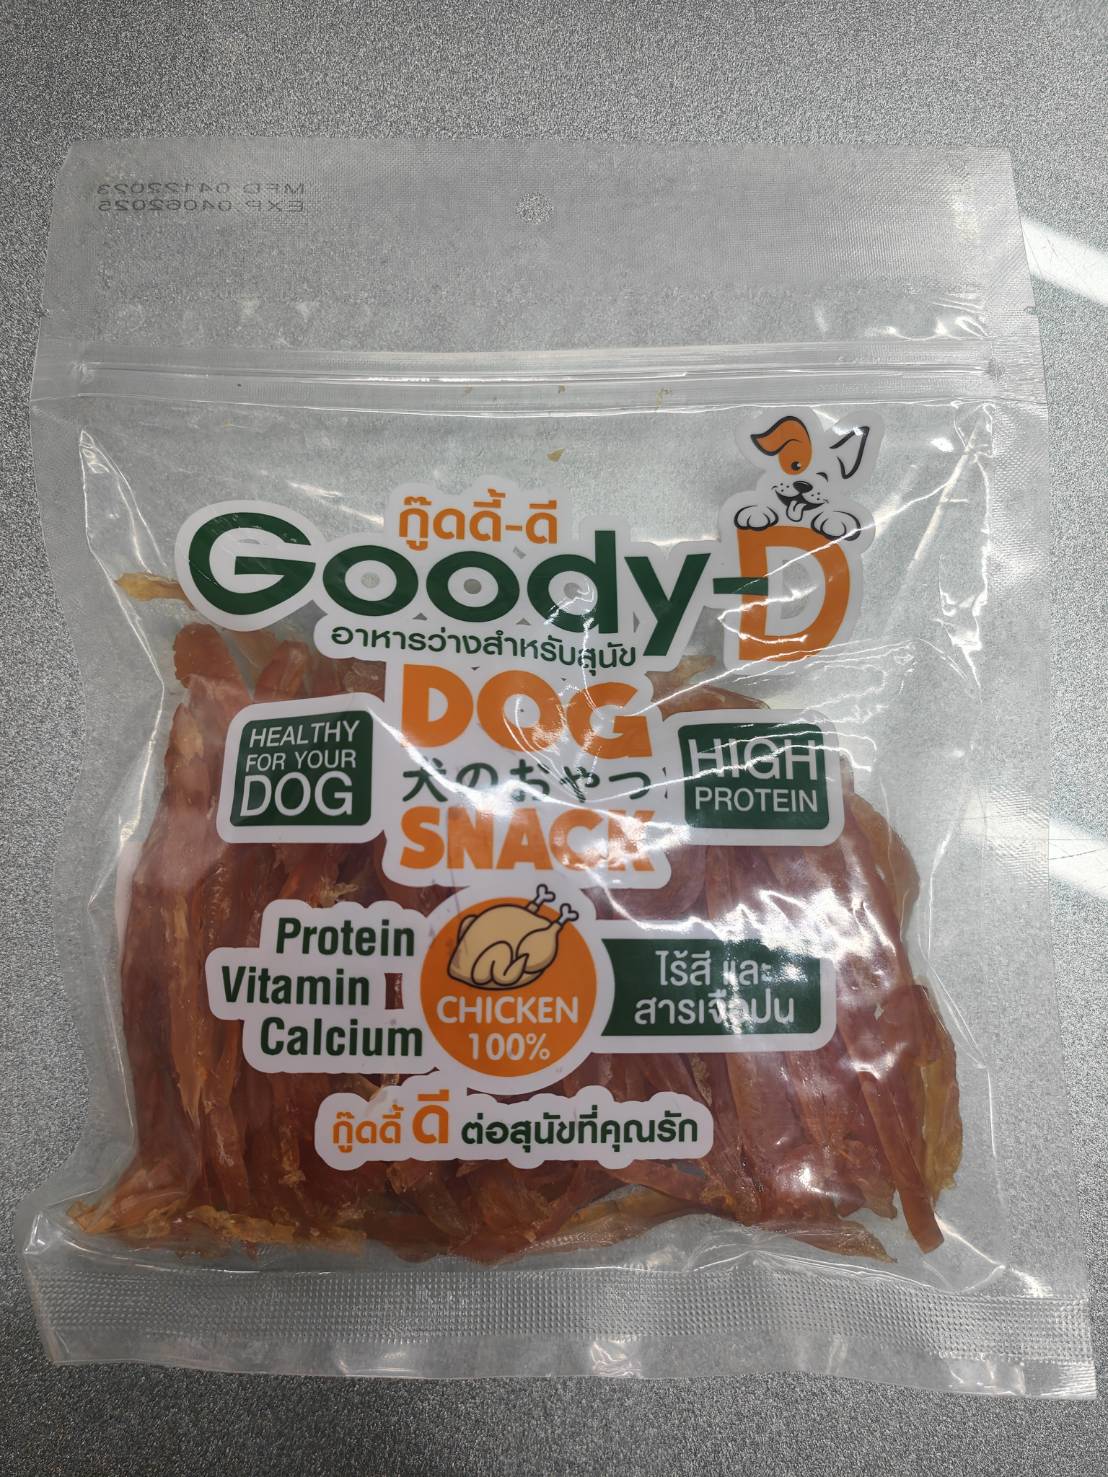 ขนมสำหรับสุนัข Goody-D สันในไก่ ขนมสุนัข กู้ดดี้ดี โปรตีนสูง ไร้สารเจือปน ขนาด 200 กรัม  สูตร ไก่สไลด์